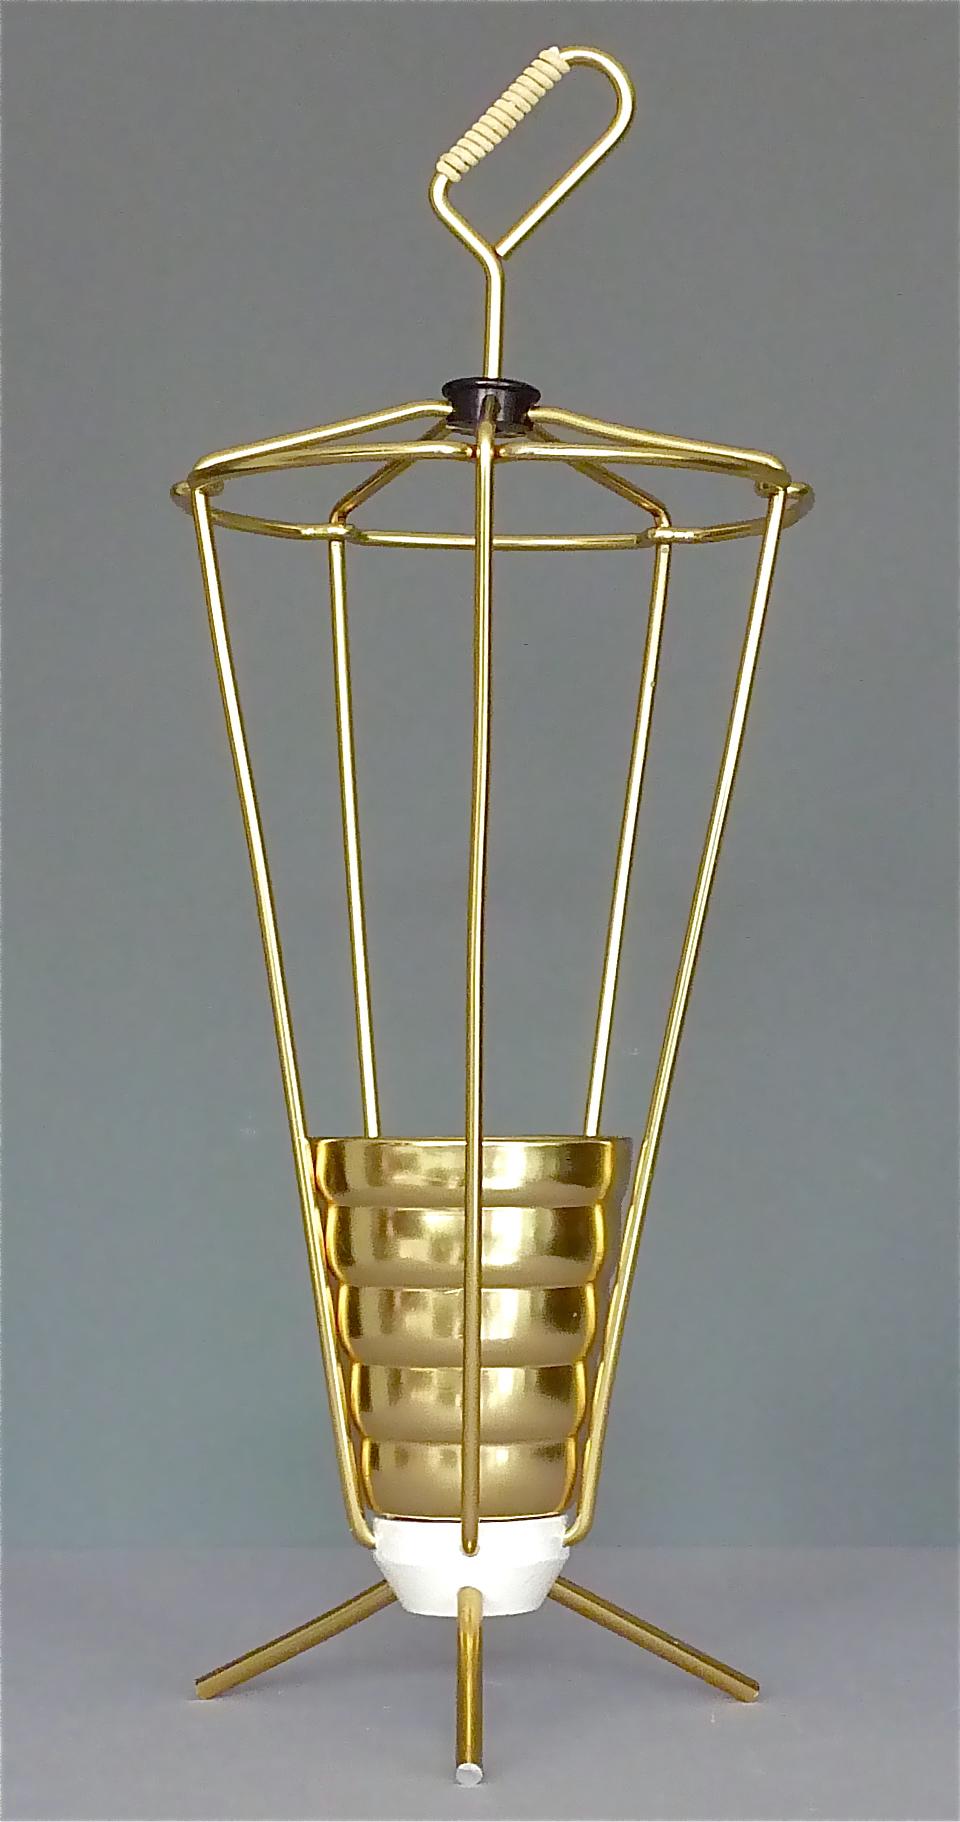 Schöner italienischer goldener Dreibeinschirmständer aus den 1950er Jahren. Schirmständer aus goldfarben eloxiertem Aluminium mit weiß emailliertem, beschwertem Sputnik-Sockel, einem goldenen Becher als Regentropfenfänger und weißer